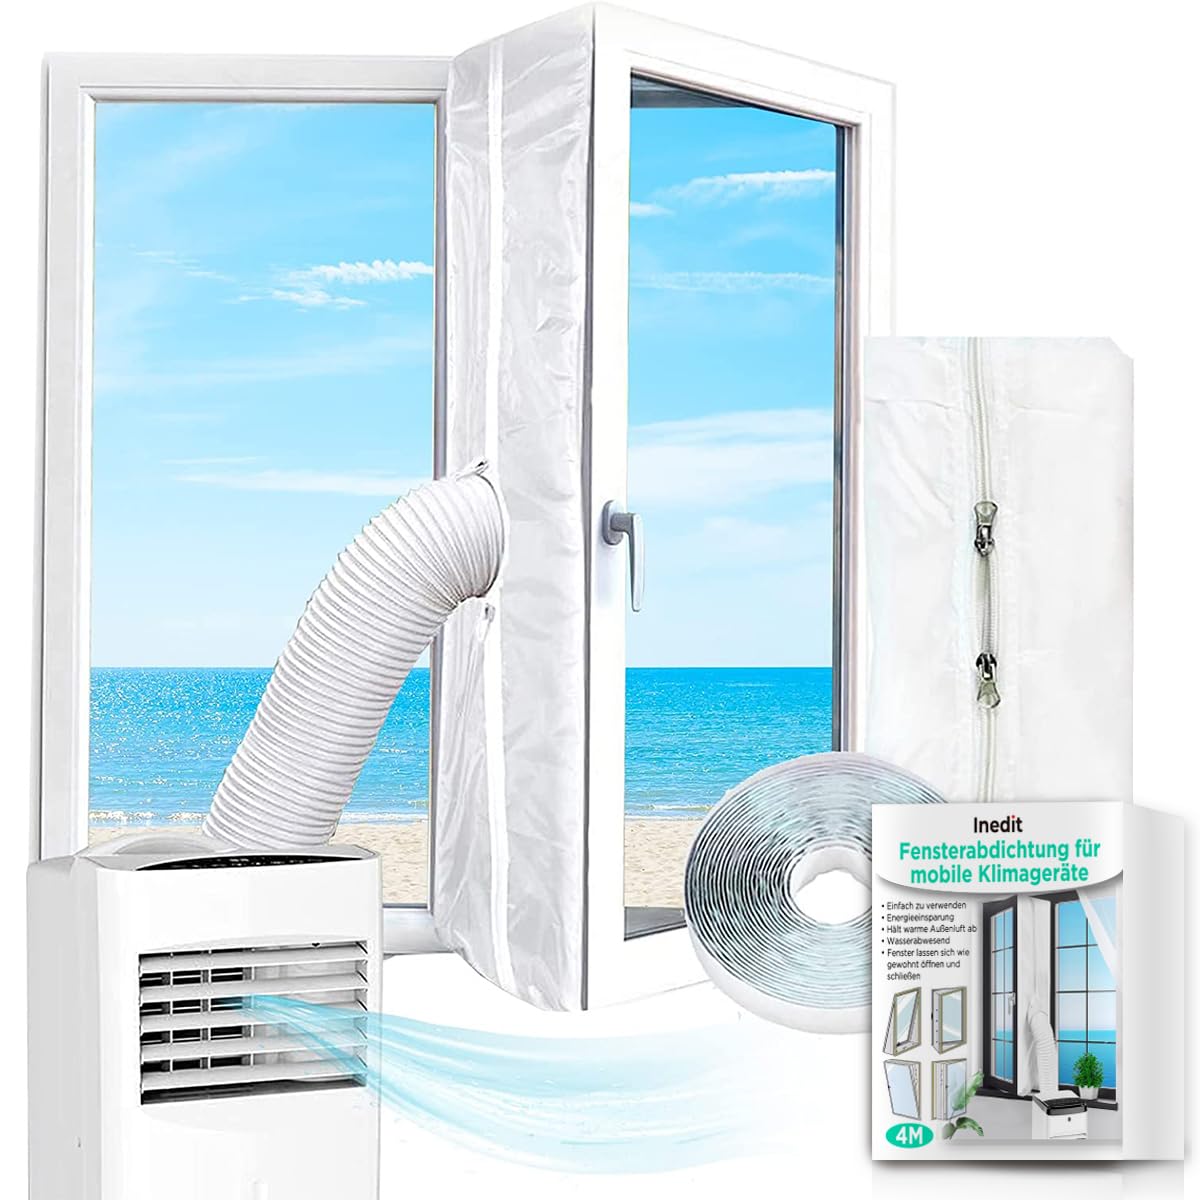 Klimaanlage Fensterabdichtung - Klimaanlagenfenster Set (400cm) - Fensterabdichtung für Mobile Klimageräte - Universell einsetzbare Dichtung - Kompatibel mit allen Modellen - SCHNELL & EINFACH von nedit